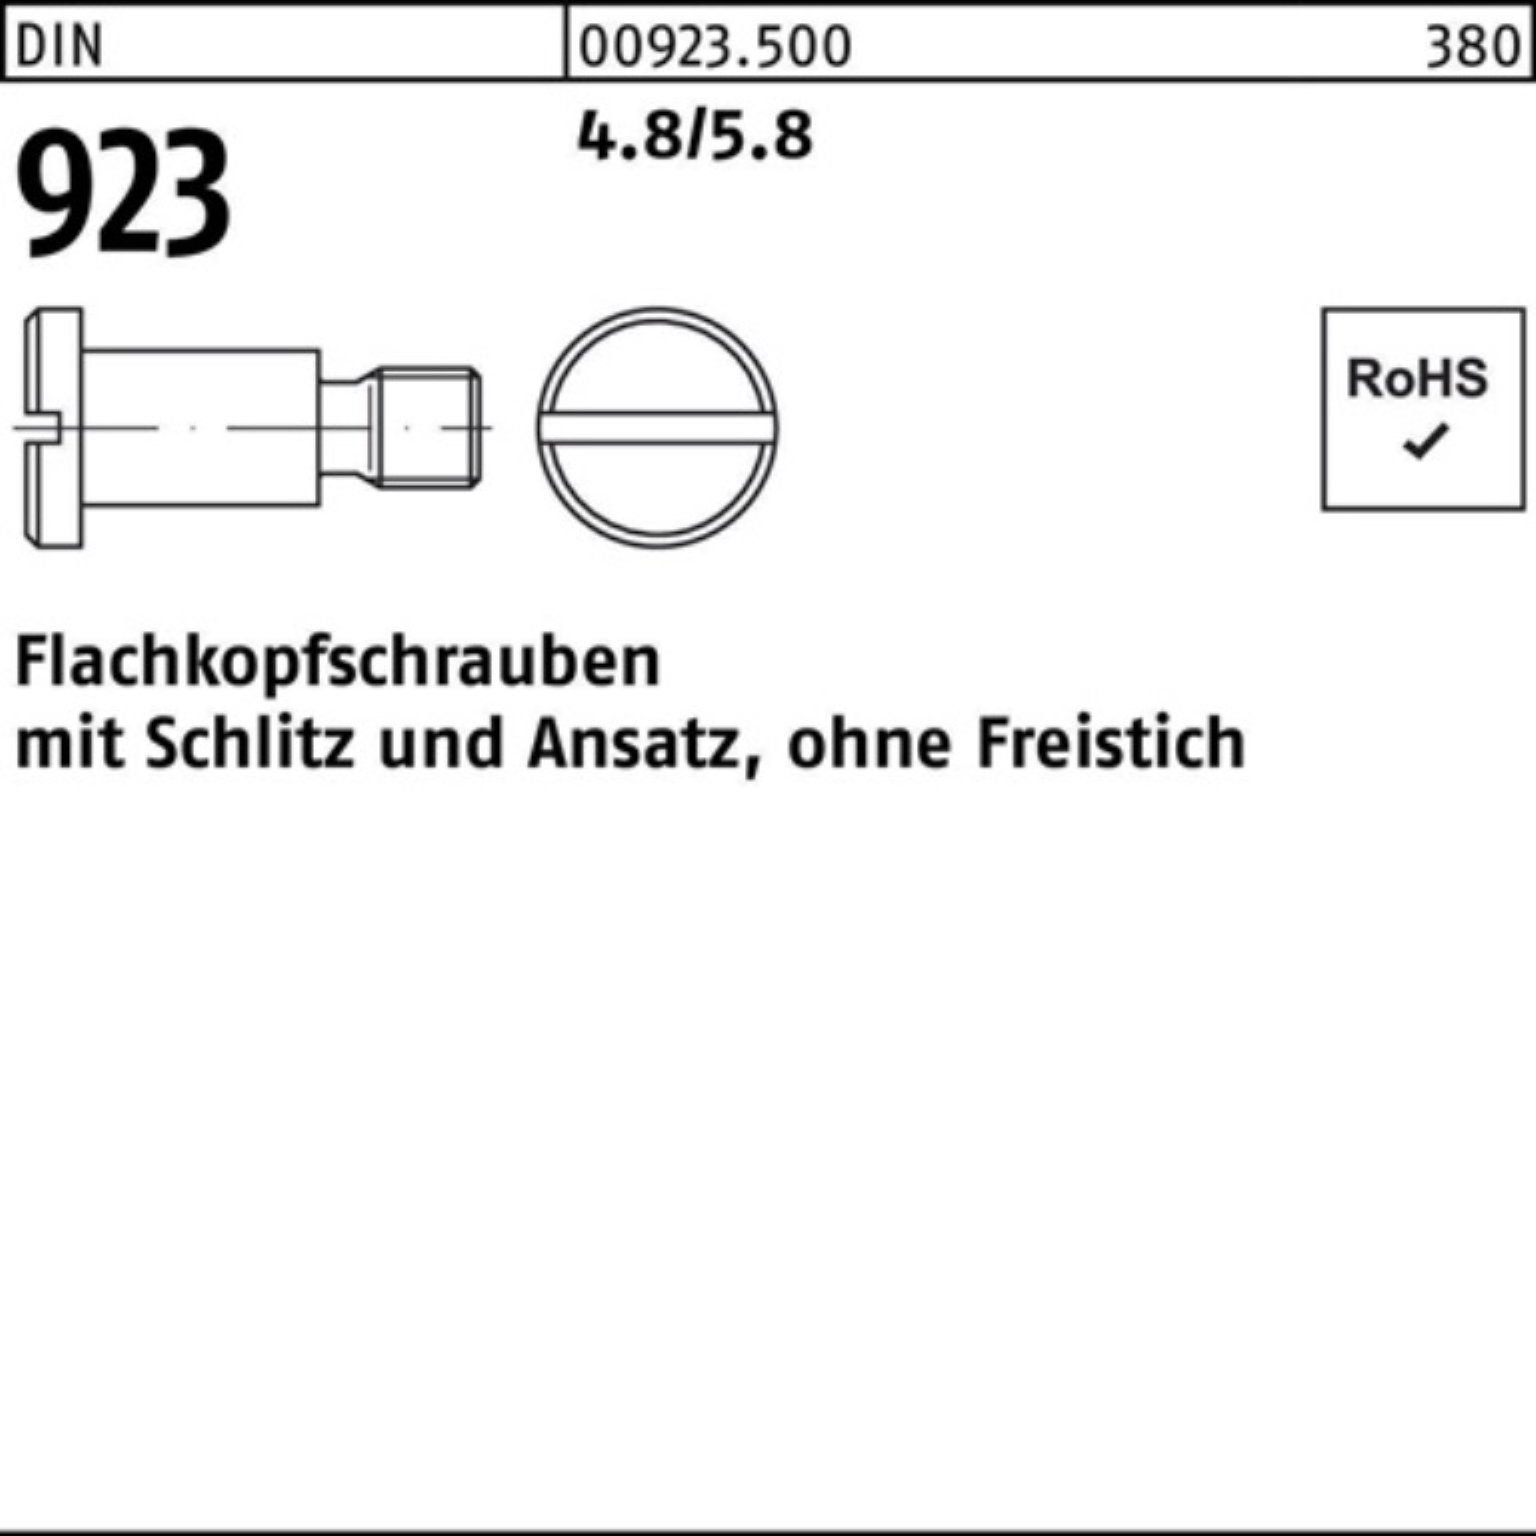 9,0 Reyher 5x DIN Pack Flachkopfschraube Schlitz/Ansatz 100er 4.8/5.8 M6x 923 Schraube